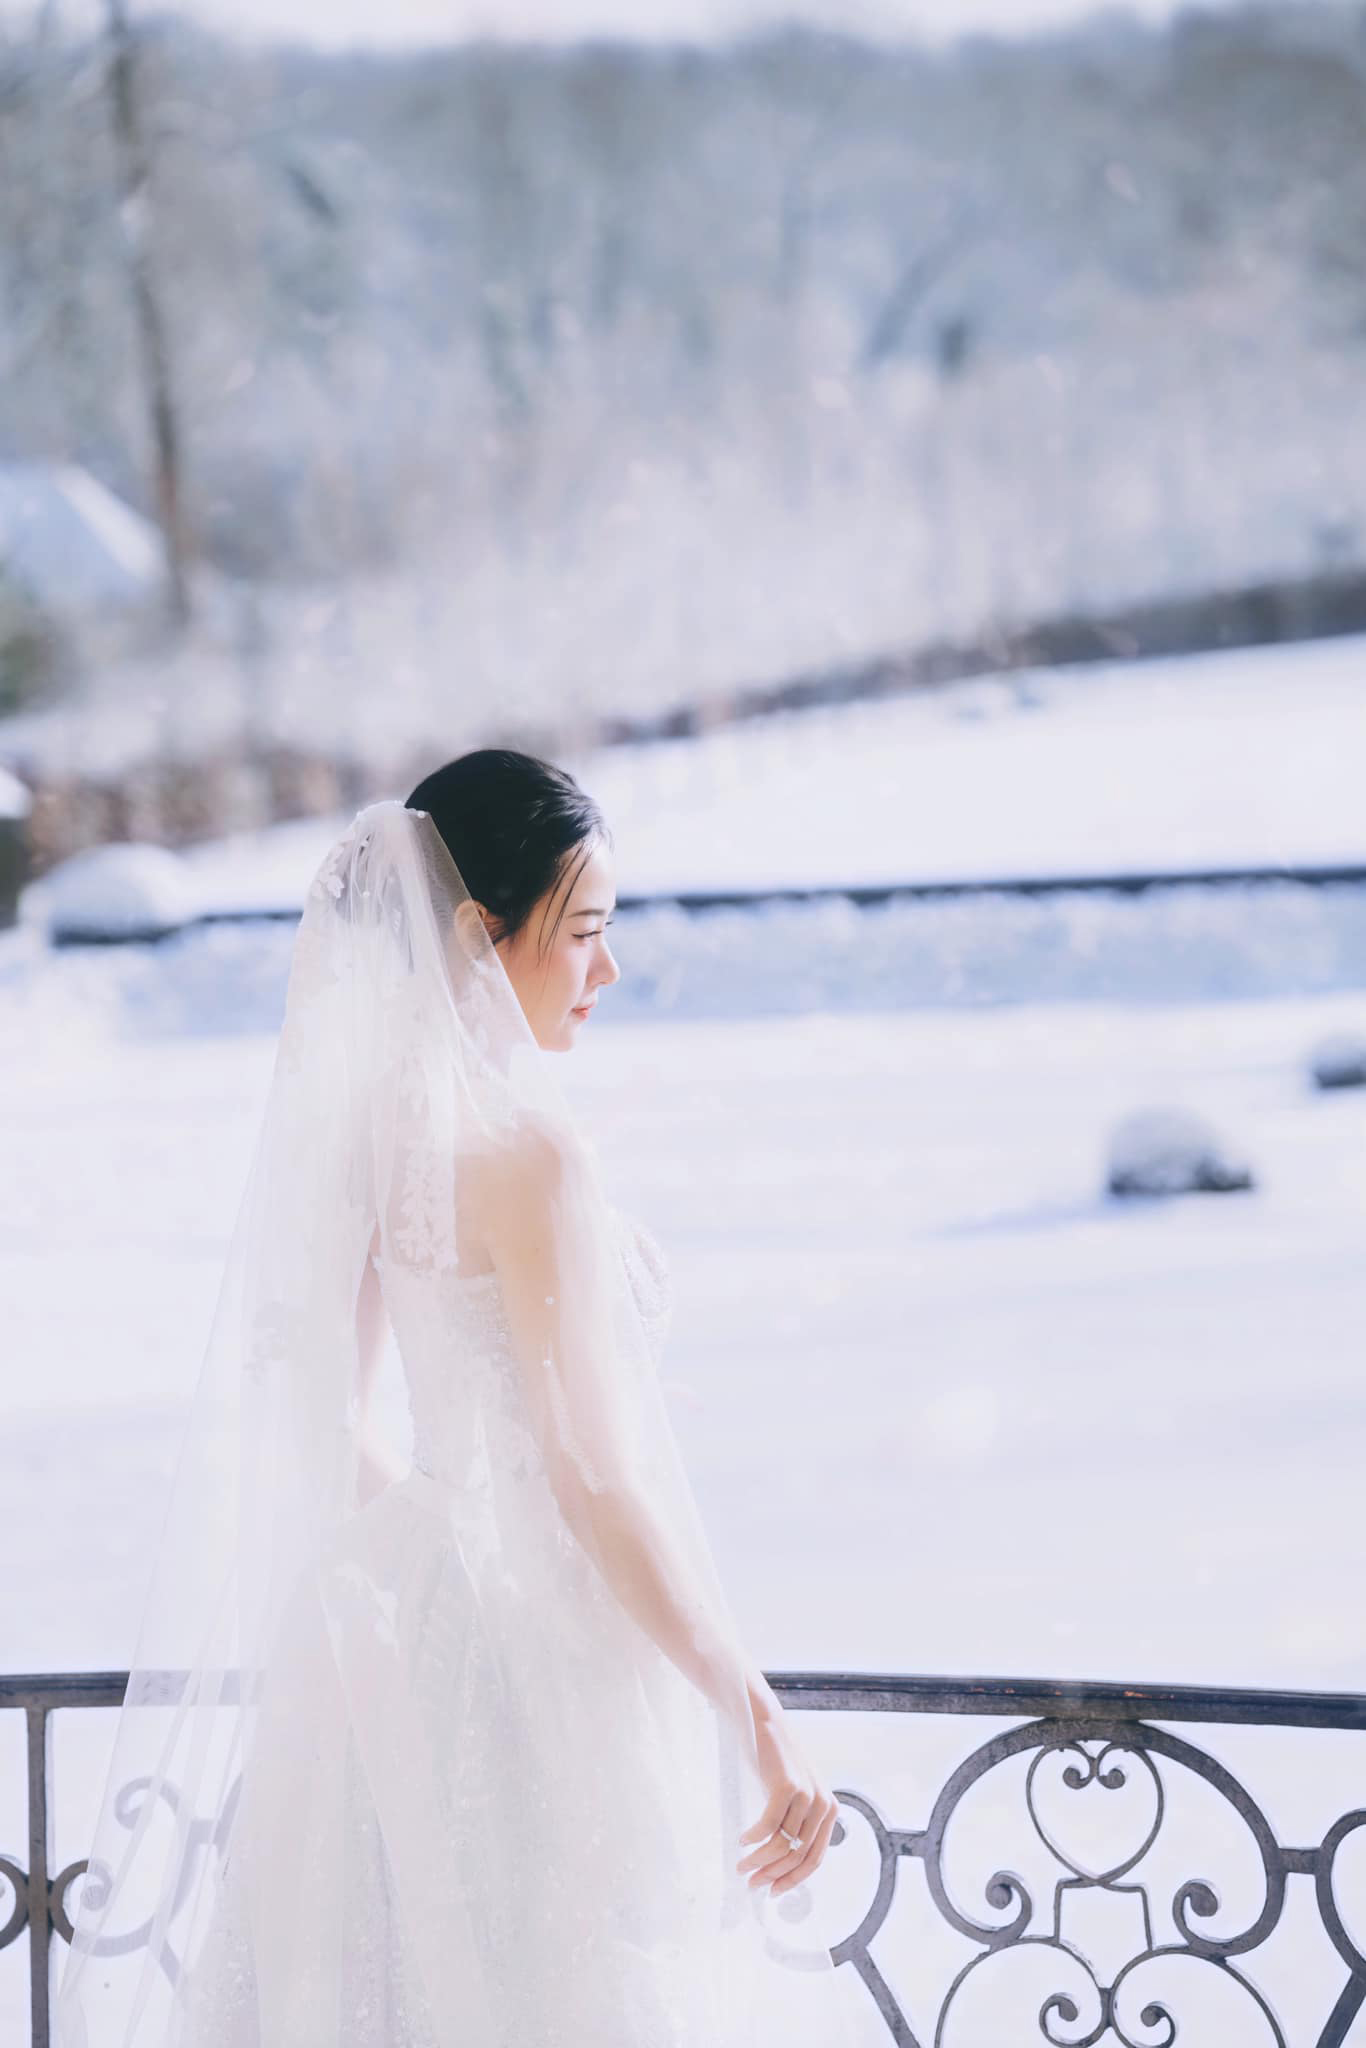 Midu tung bộ ảnh cưới chụp dưới cái lạnh -6 độ tại Paris, khung cảnh tựa cổ tích - ảnh 4